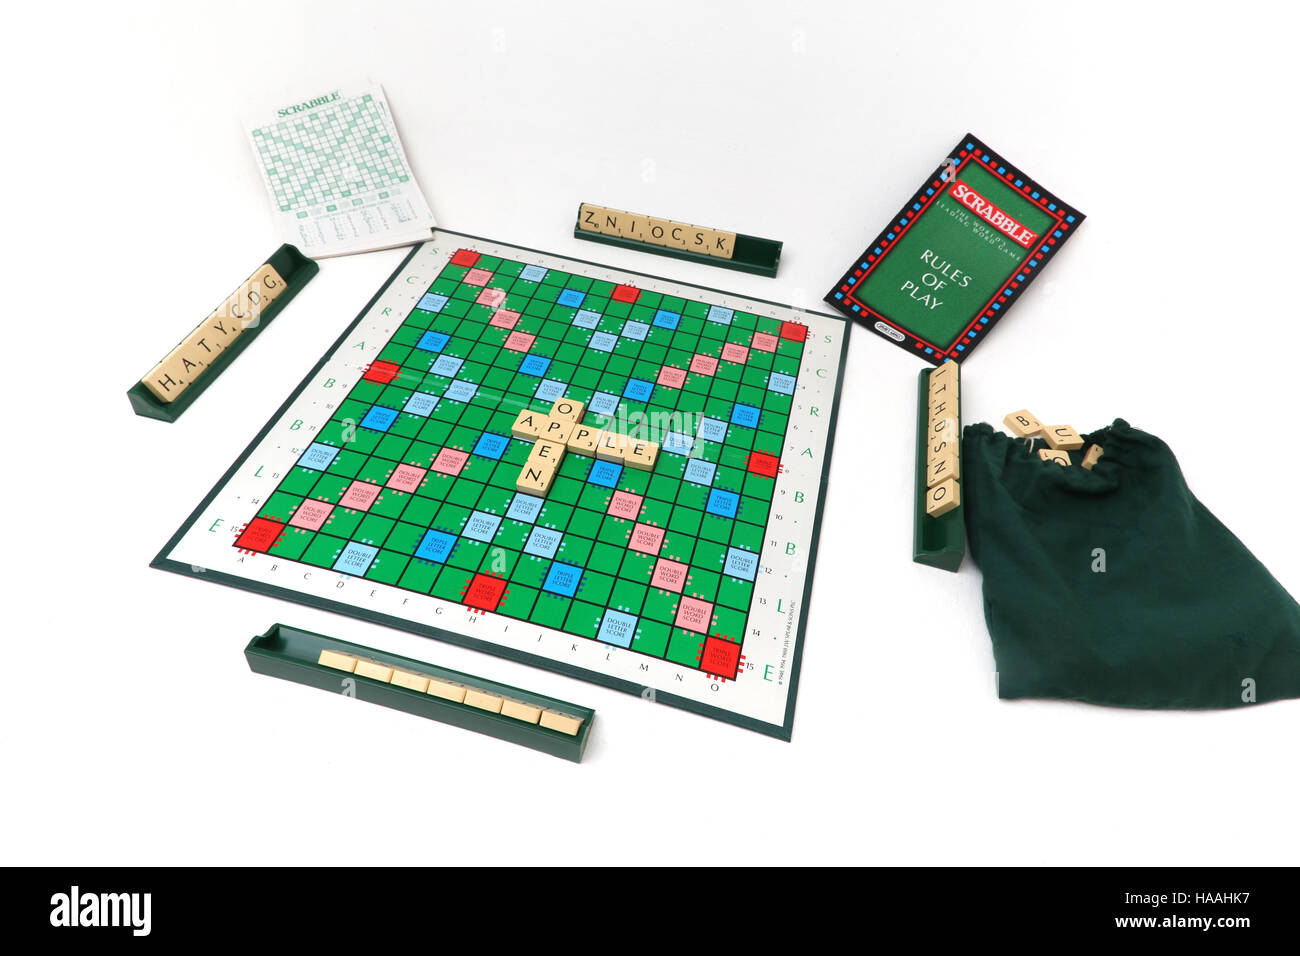 Jeu de société Scrabble Tiles à bord et Instructions Banque D'Images